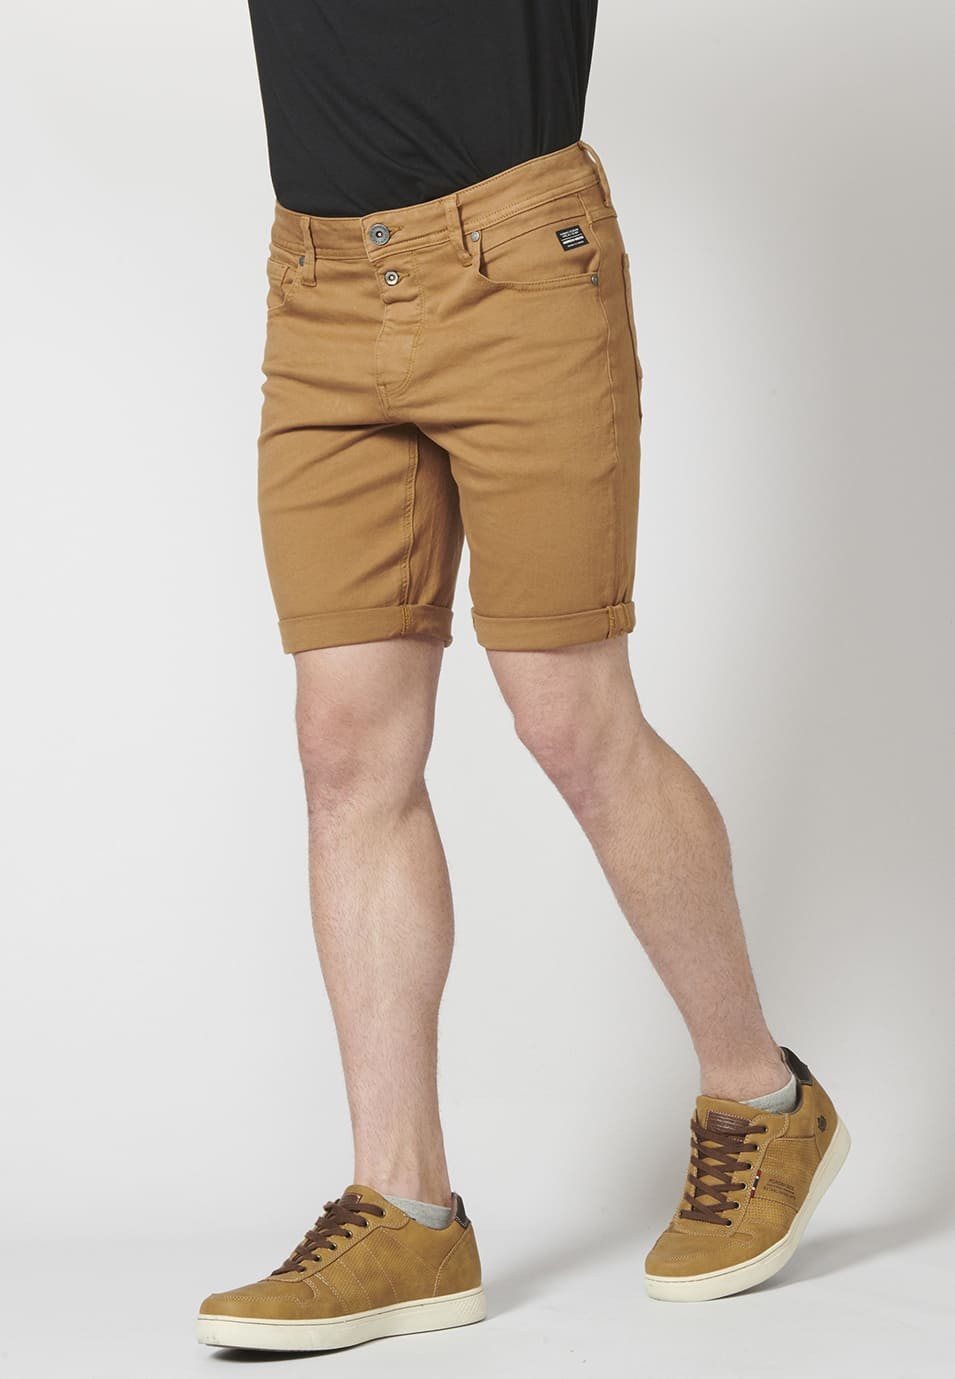 Pantalon corto color tapered fit con detalle de cadena extraíble para Hombre